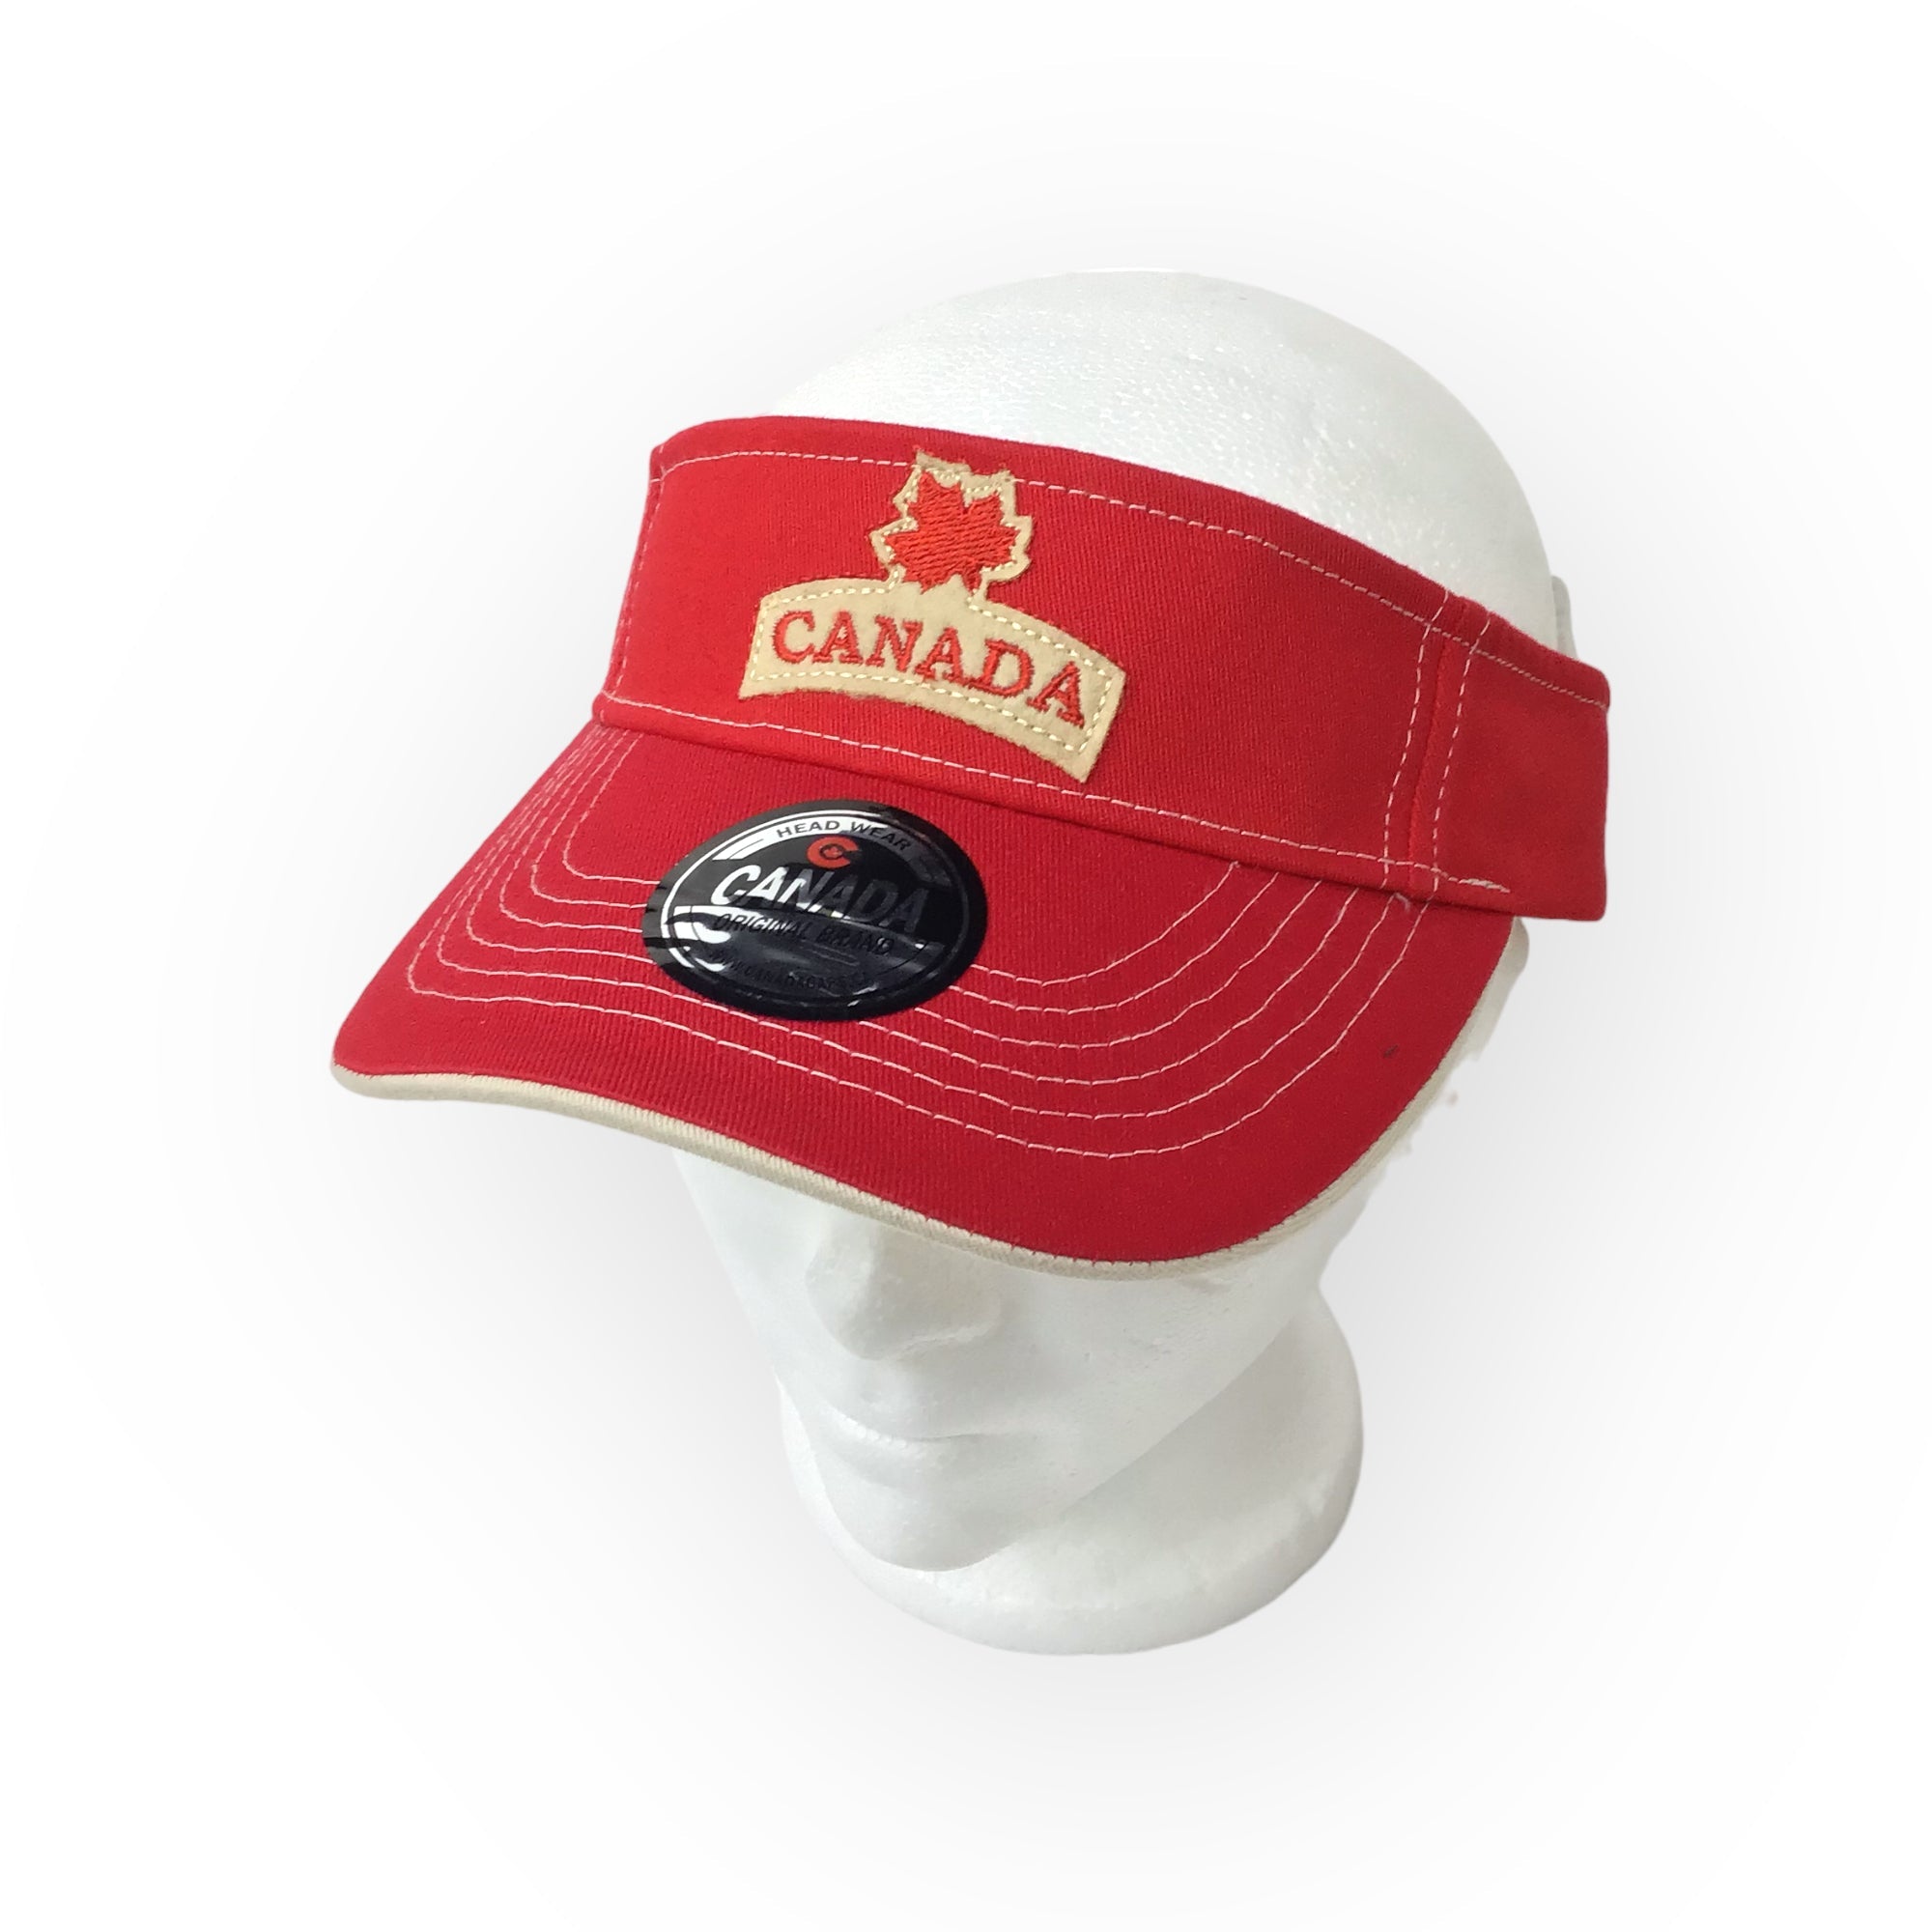 LADIES RED VISOR HAT CANADA MAPLE LEAF CAP